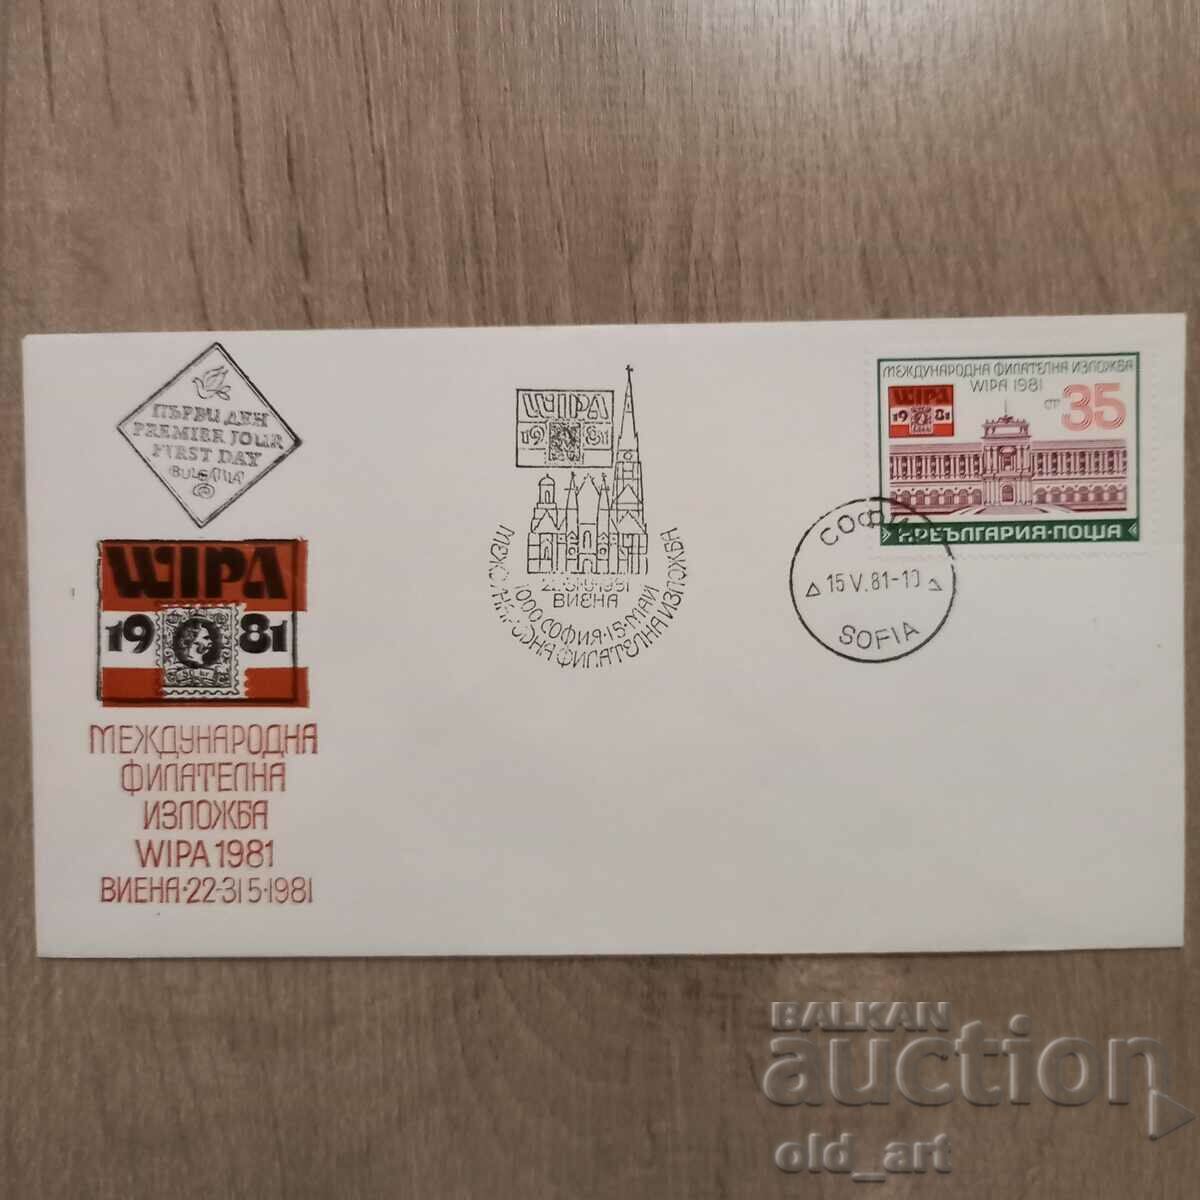 Postal envelope - Int. WIPA Philatelic Exhibition 1981